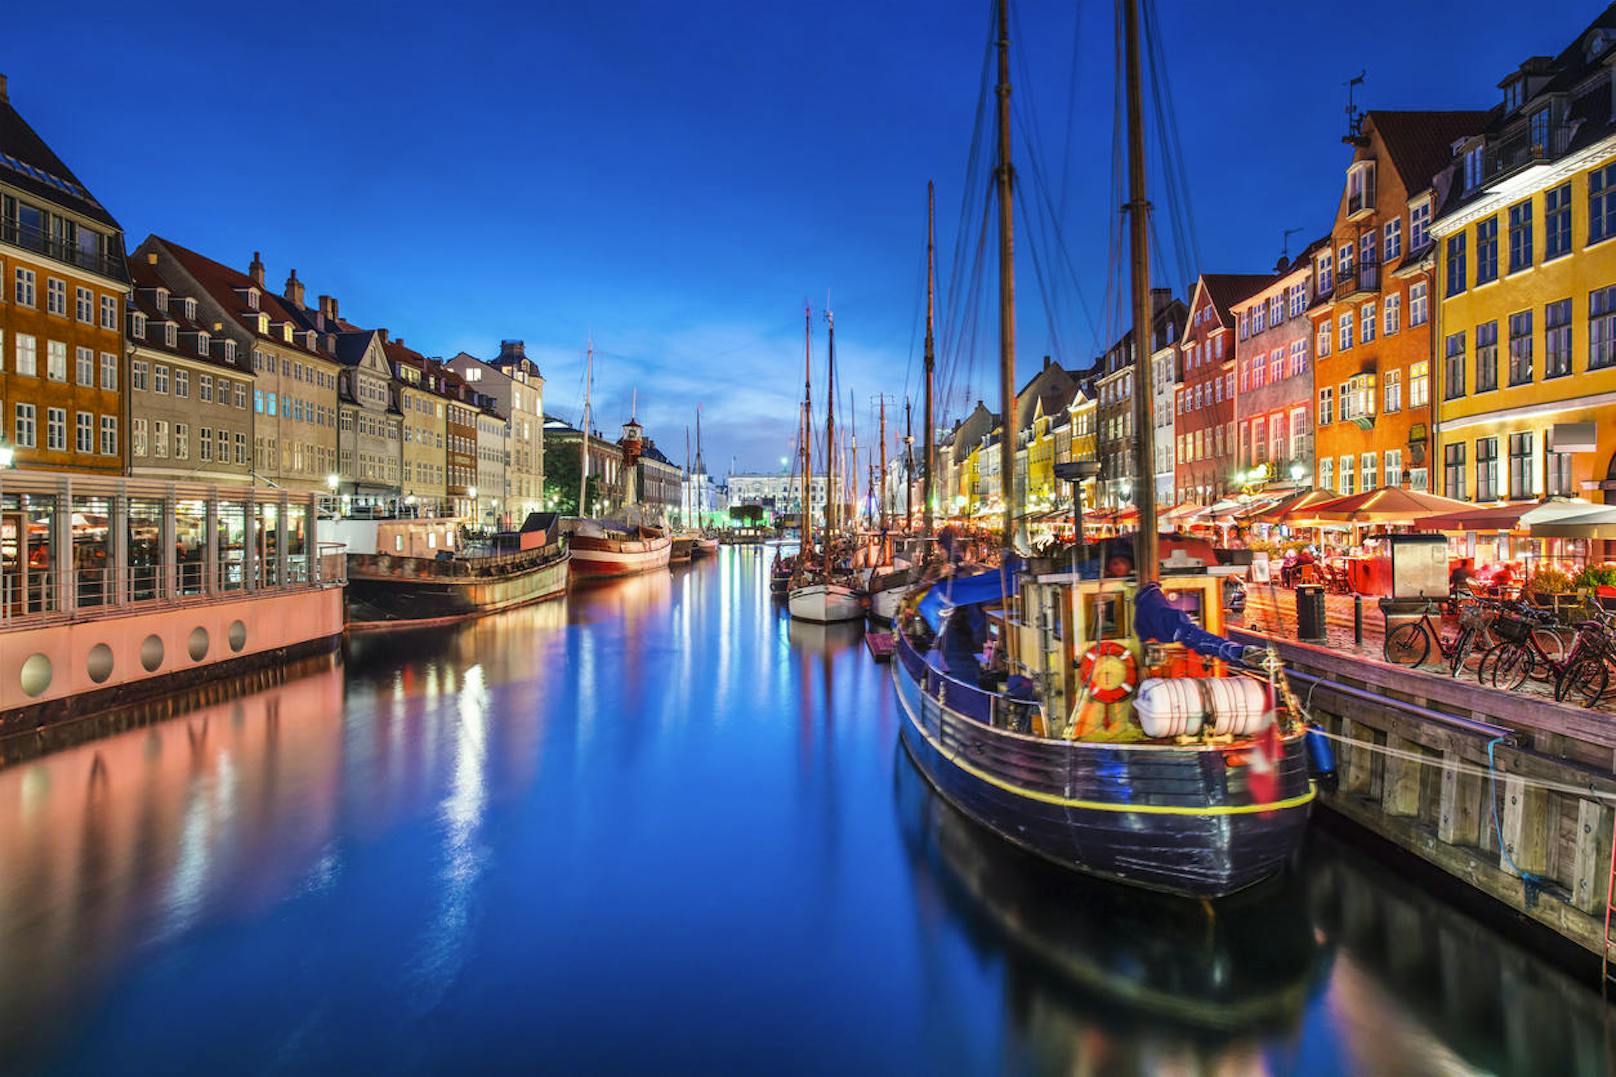 Die sonst eher teure Stadt <b>Kopenhagen</b> können Sie Ende März und Anfang April schon ab günstigen 51 für Hin- und Rückflug besuchen.